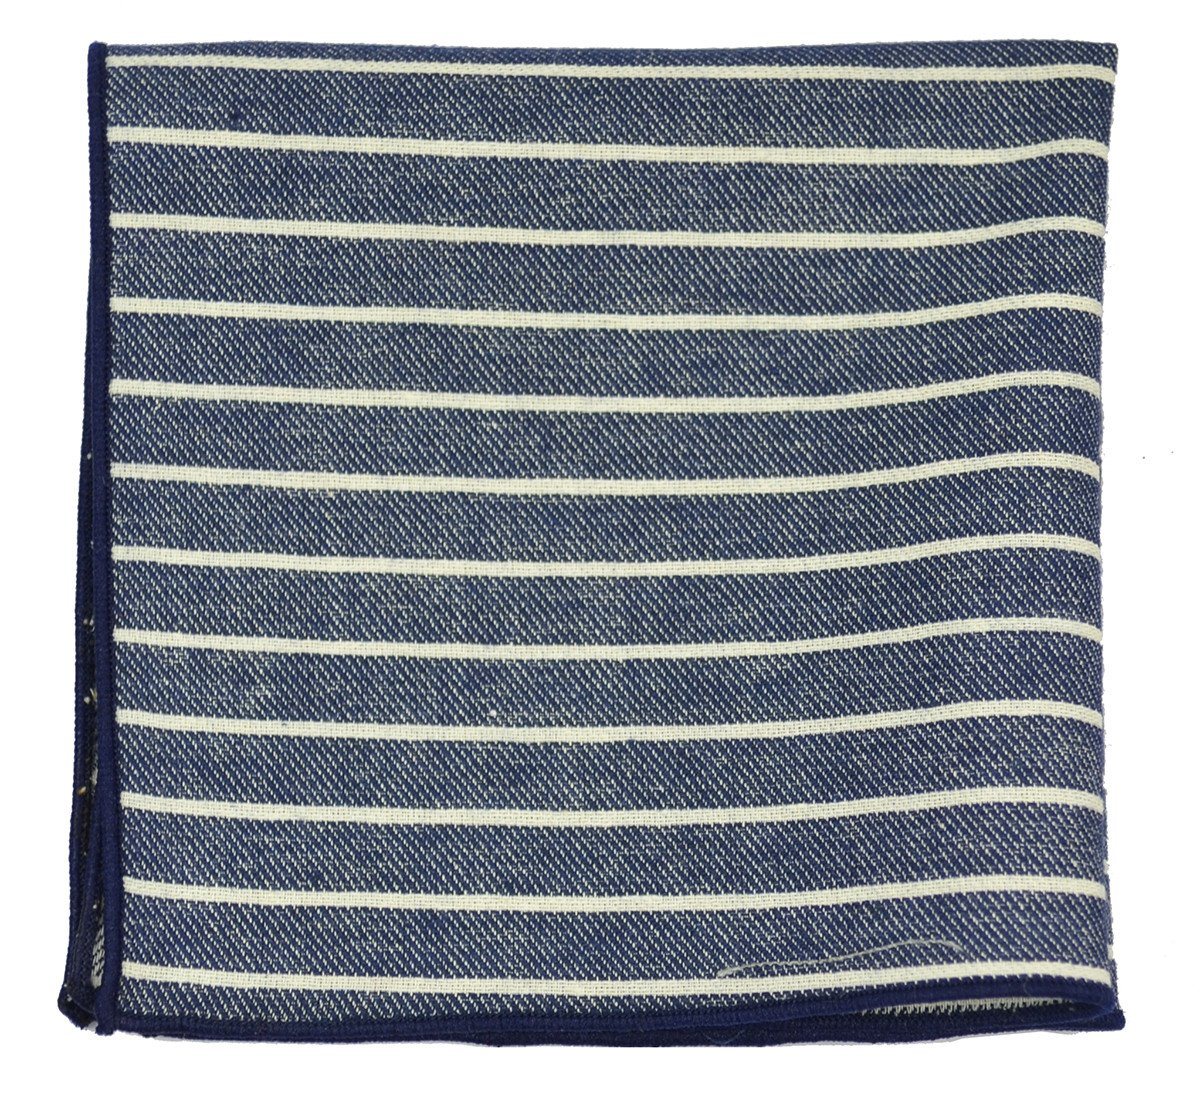 Blue Striped Linen Tie Set by Paul Malone | Paul Malone